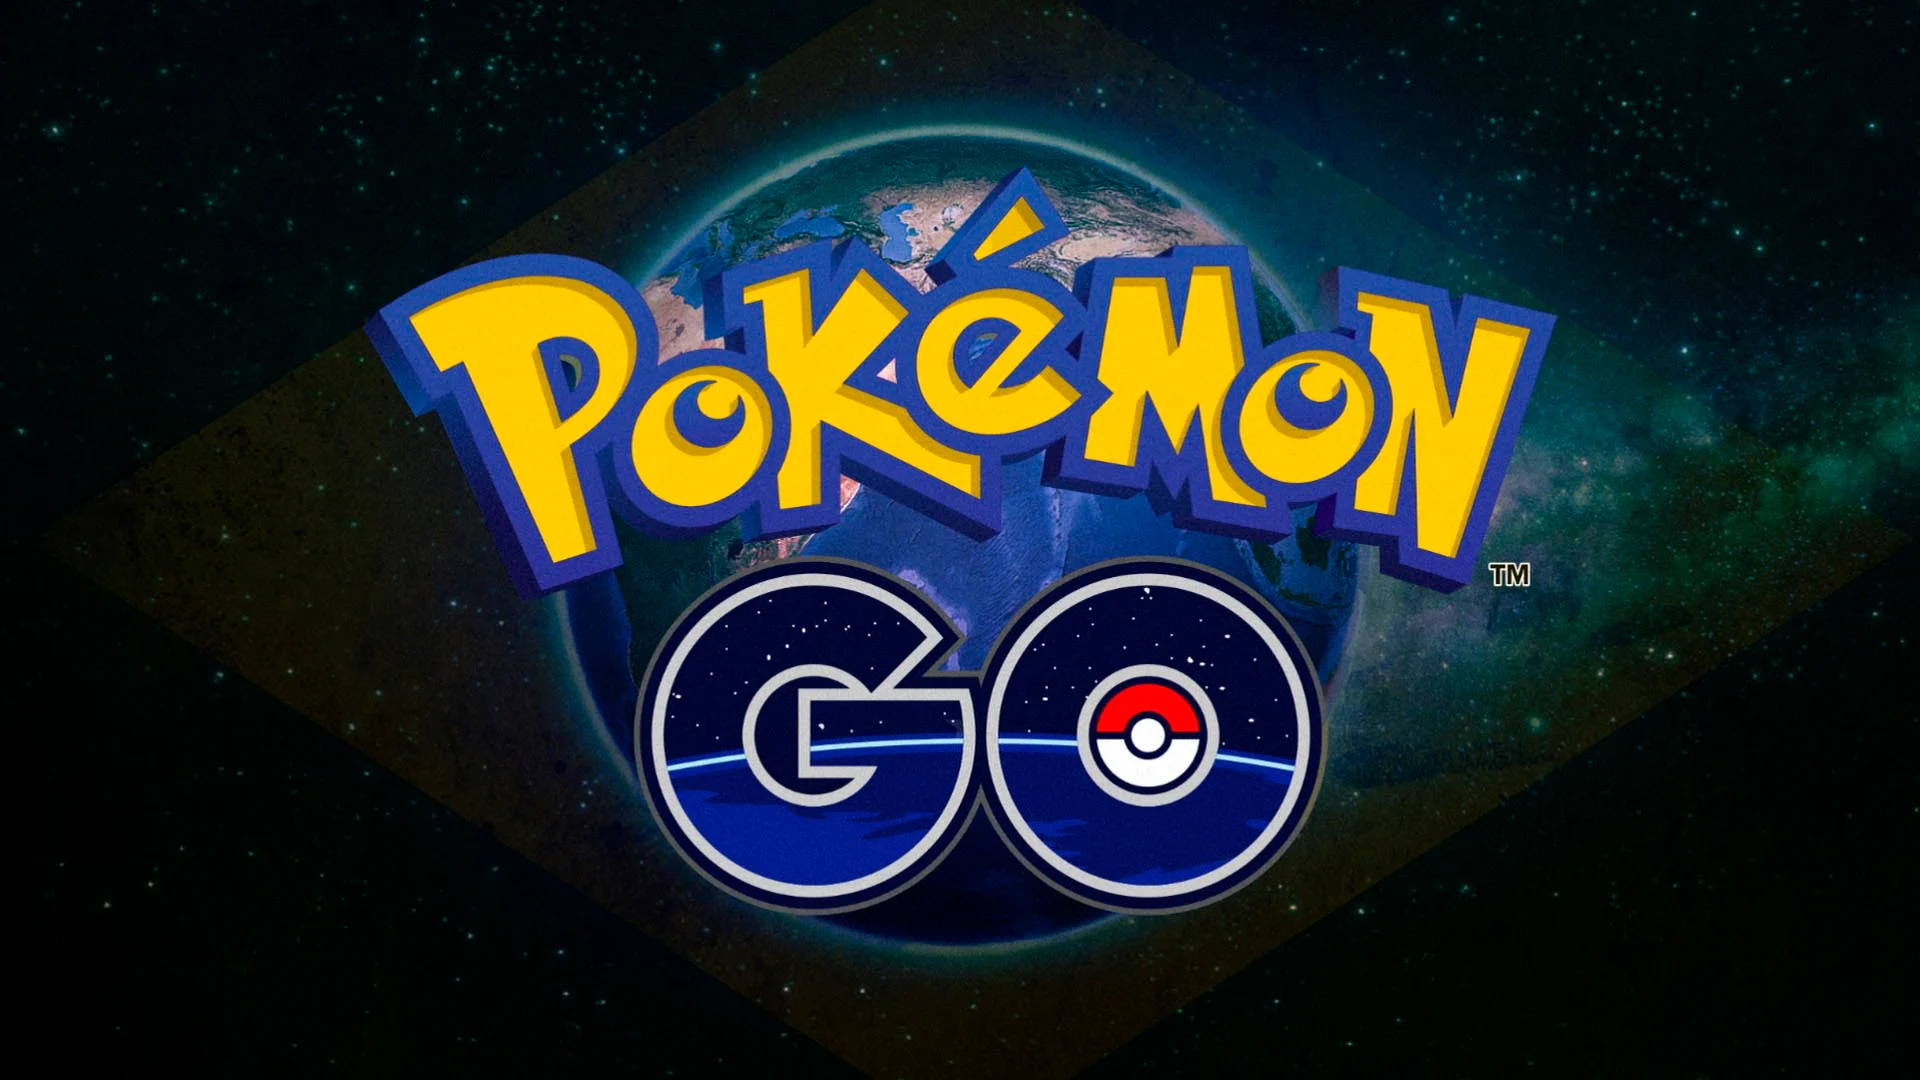 Pokemon go: jogo se adapta para a quarentena! | 404c94b5 pokemon go brasil | married games game freak | game freak | pokémon go